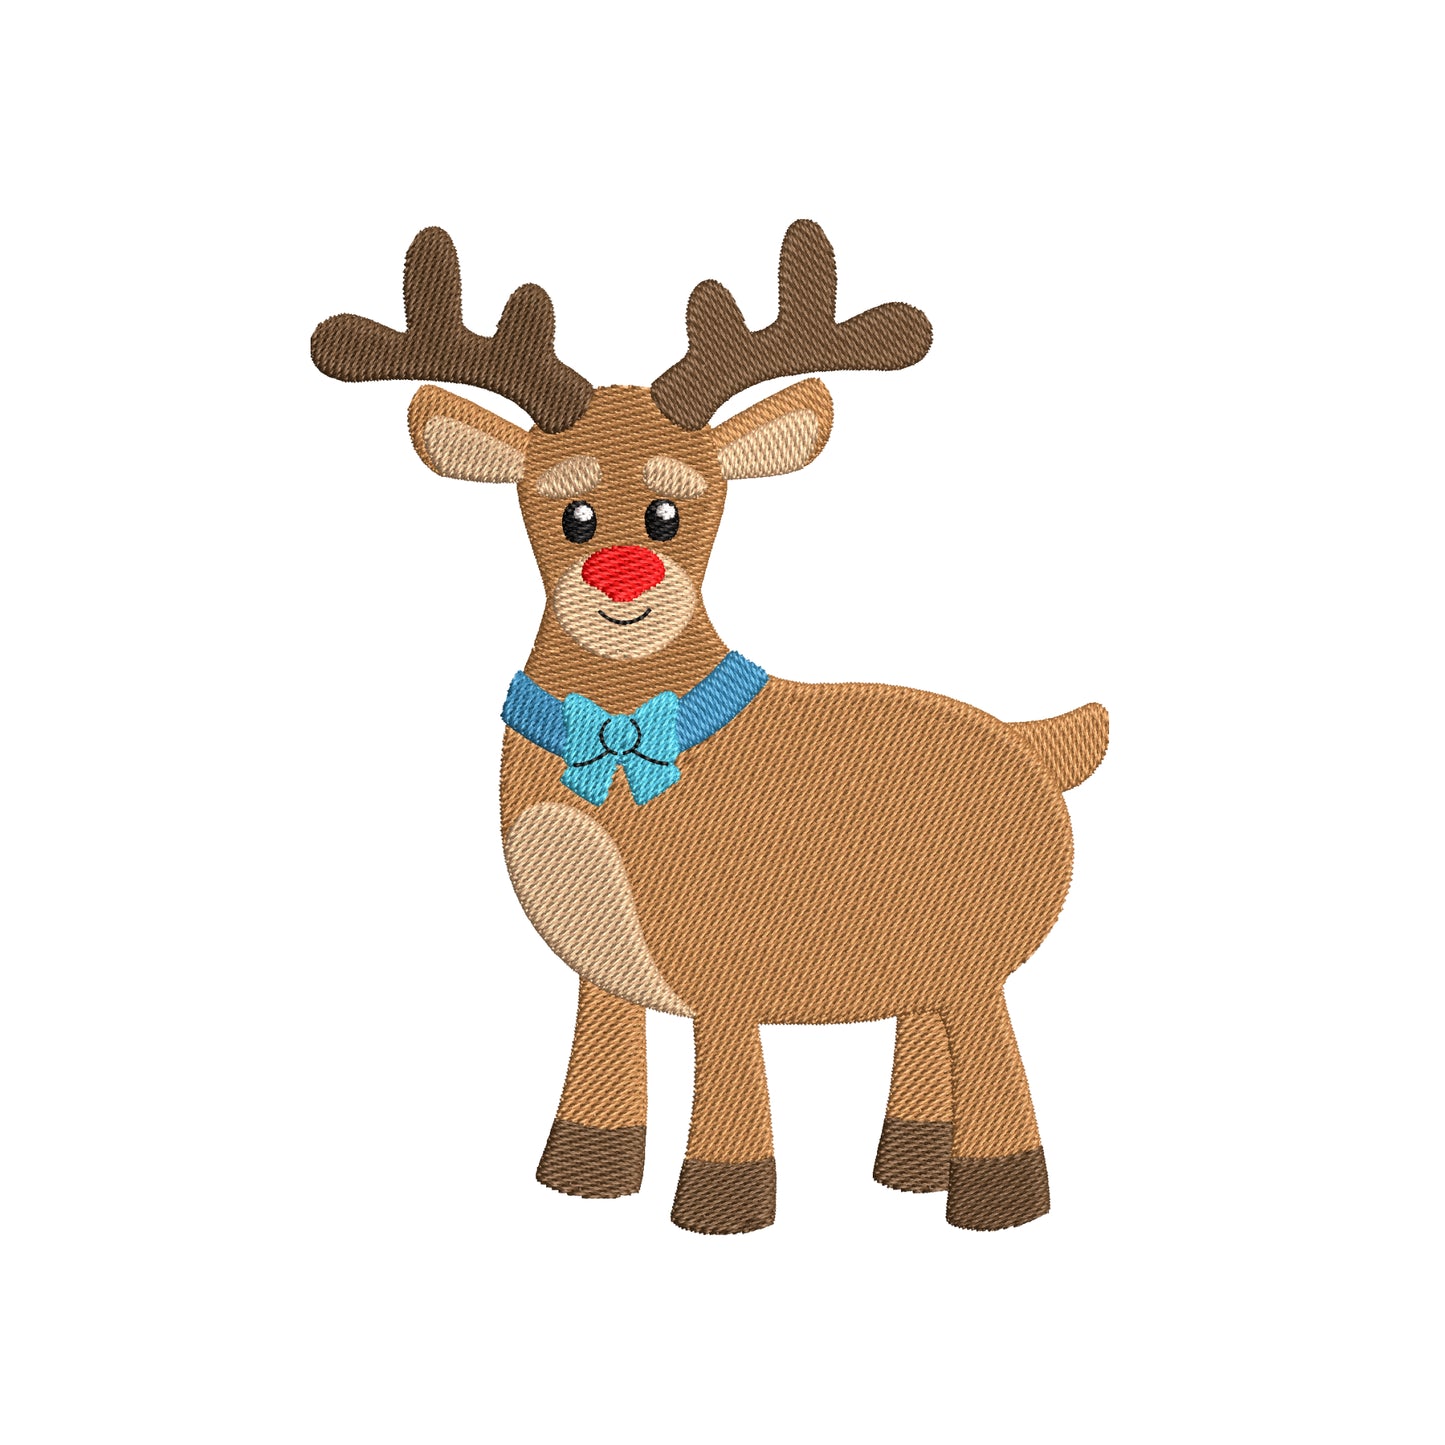 Christmas deer digital embroidery designs - 910246